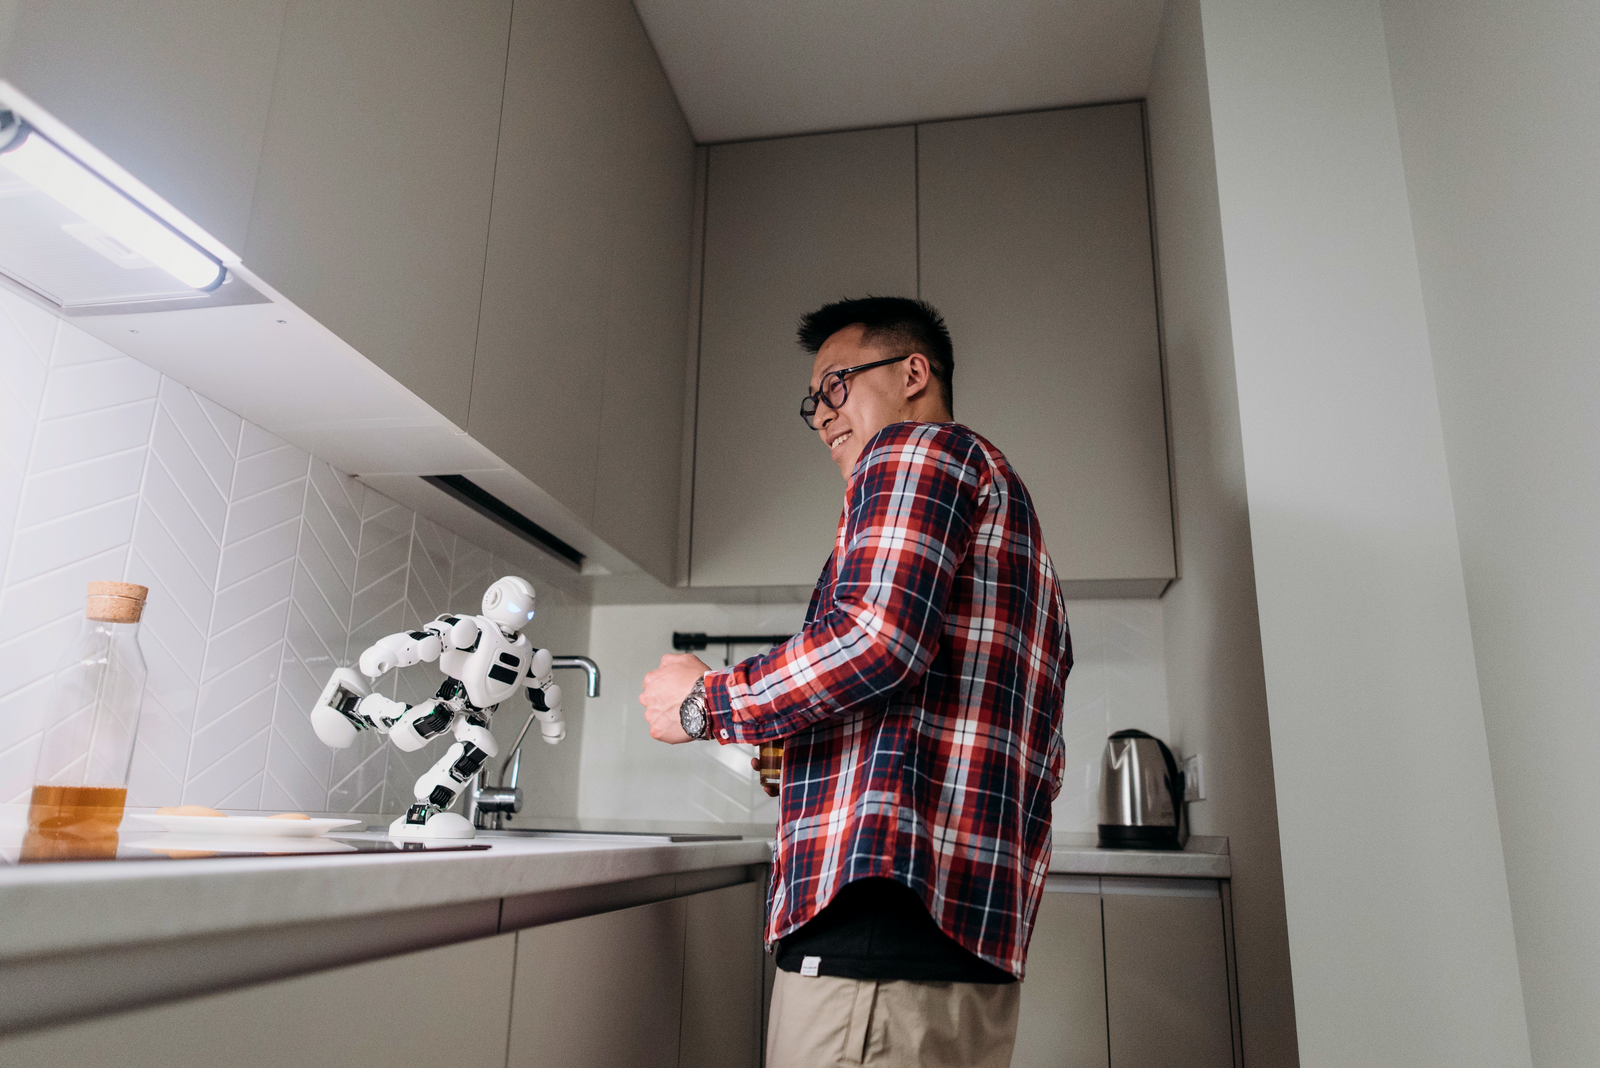 Znanstvena fantastika ili stvarnost: Emocionalni odnos čovjeka i robota